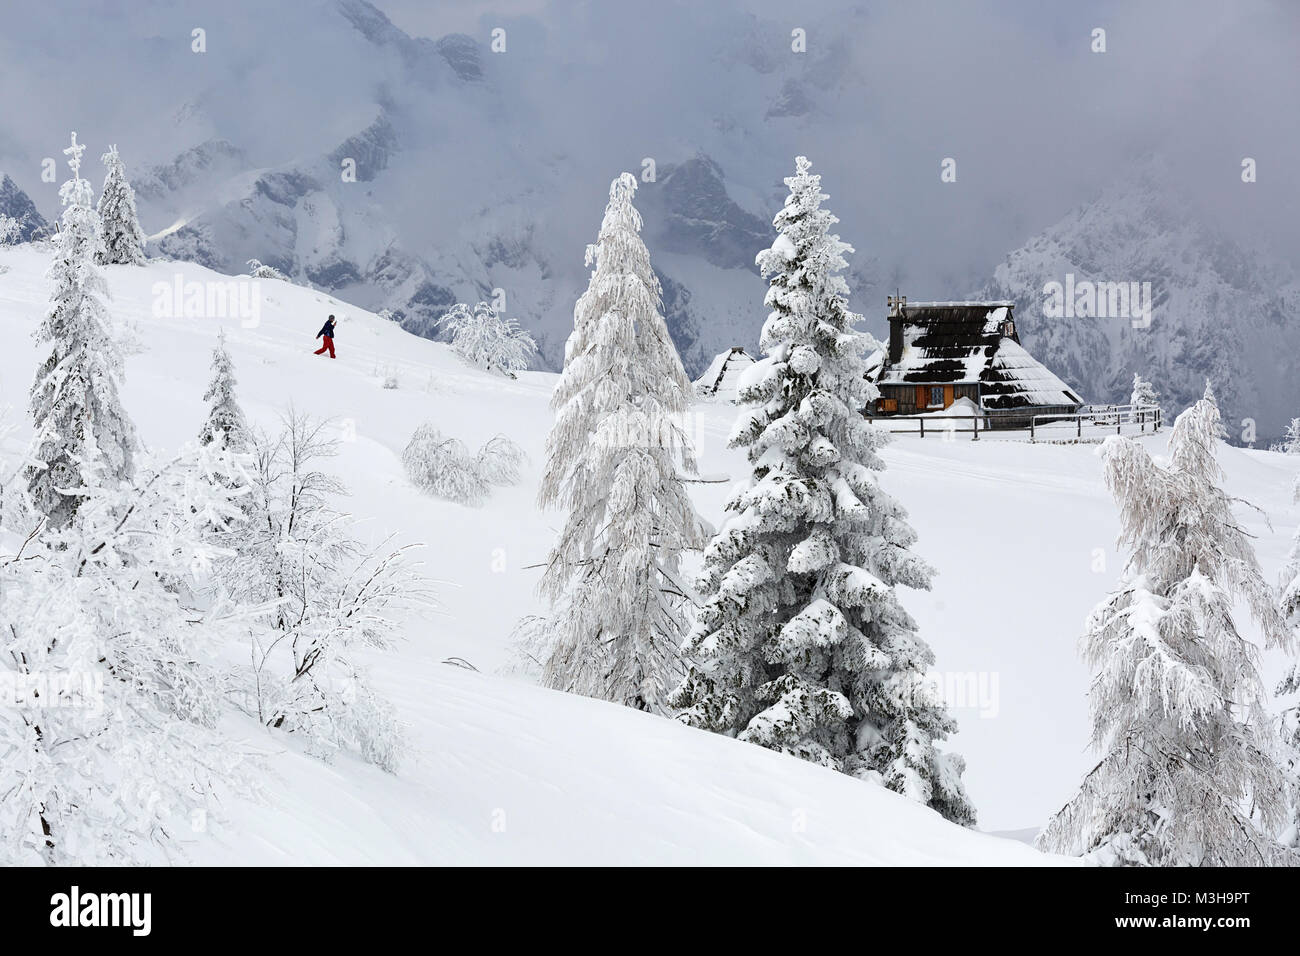 Randonnée randonneur solitaire à un chalet sur une montagne couverte de neige, Velika planina, la Slovénie. Banque D'Images